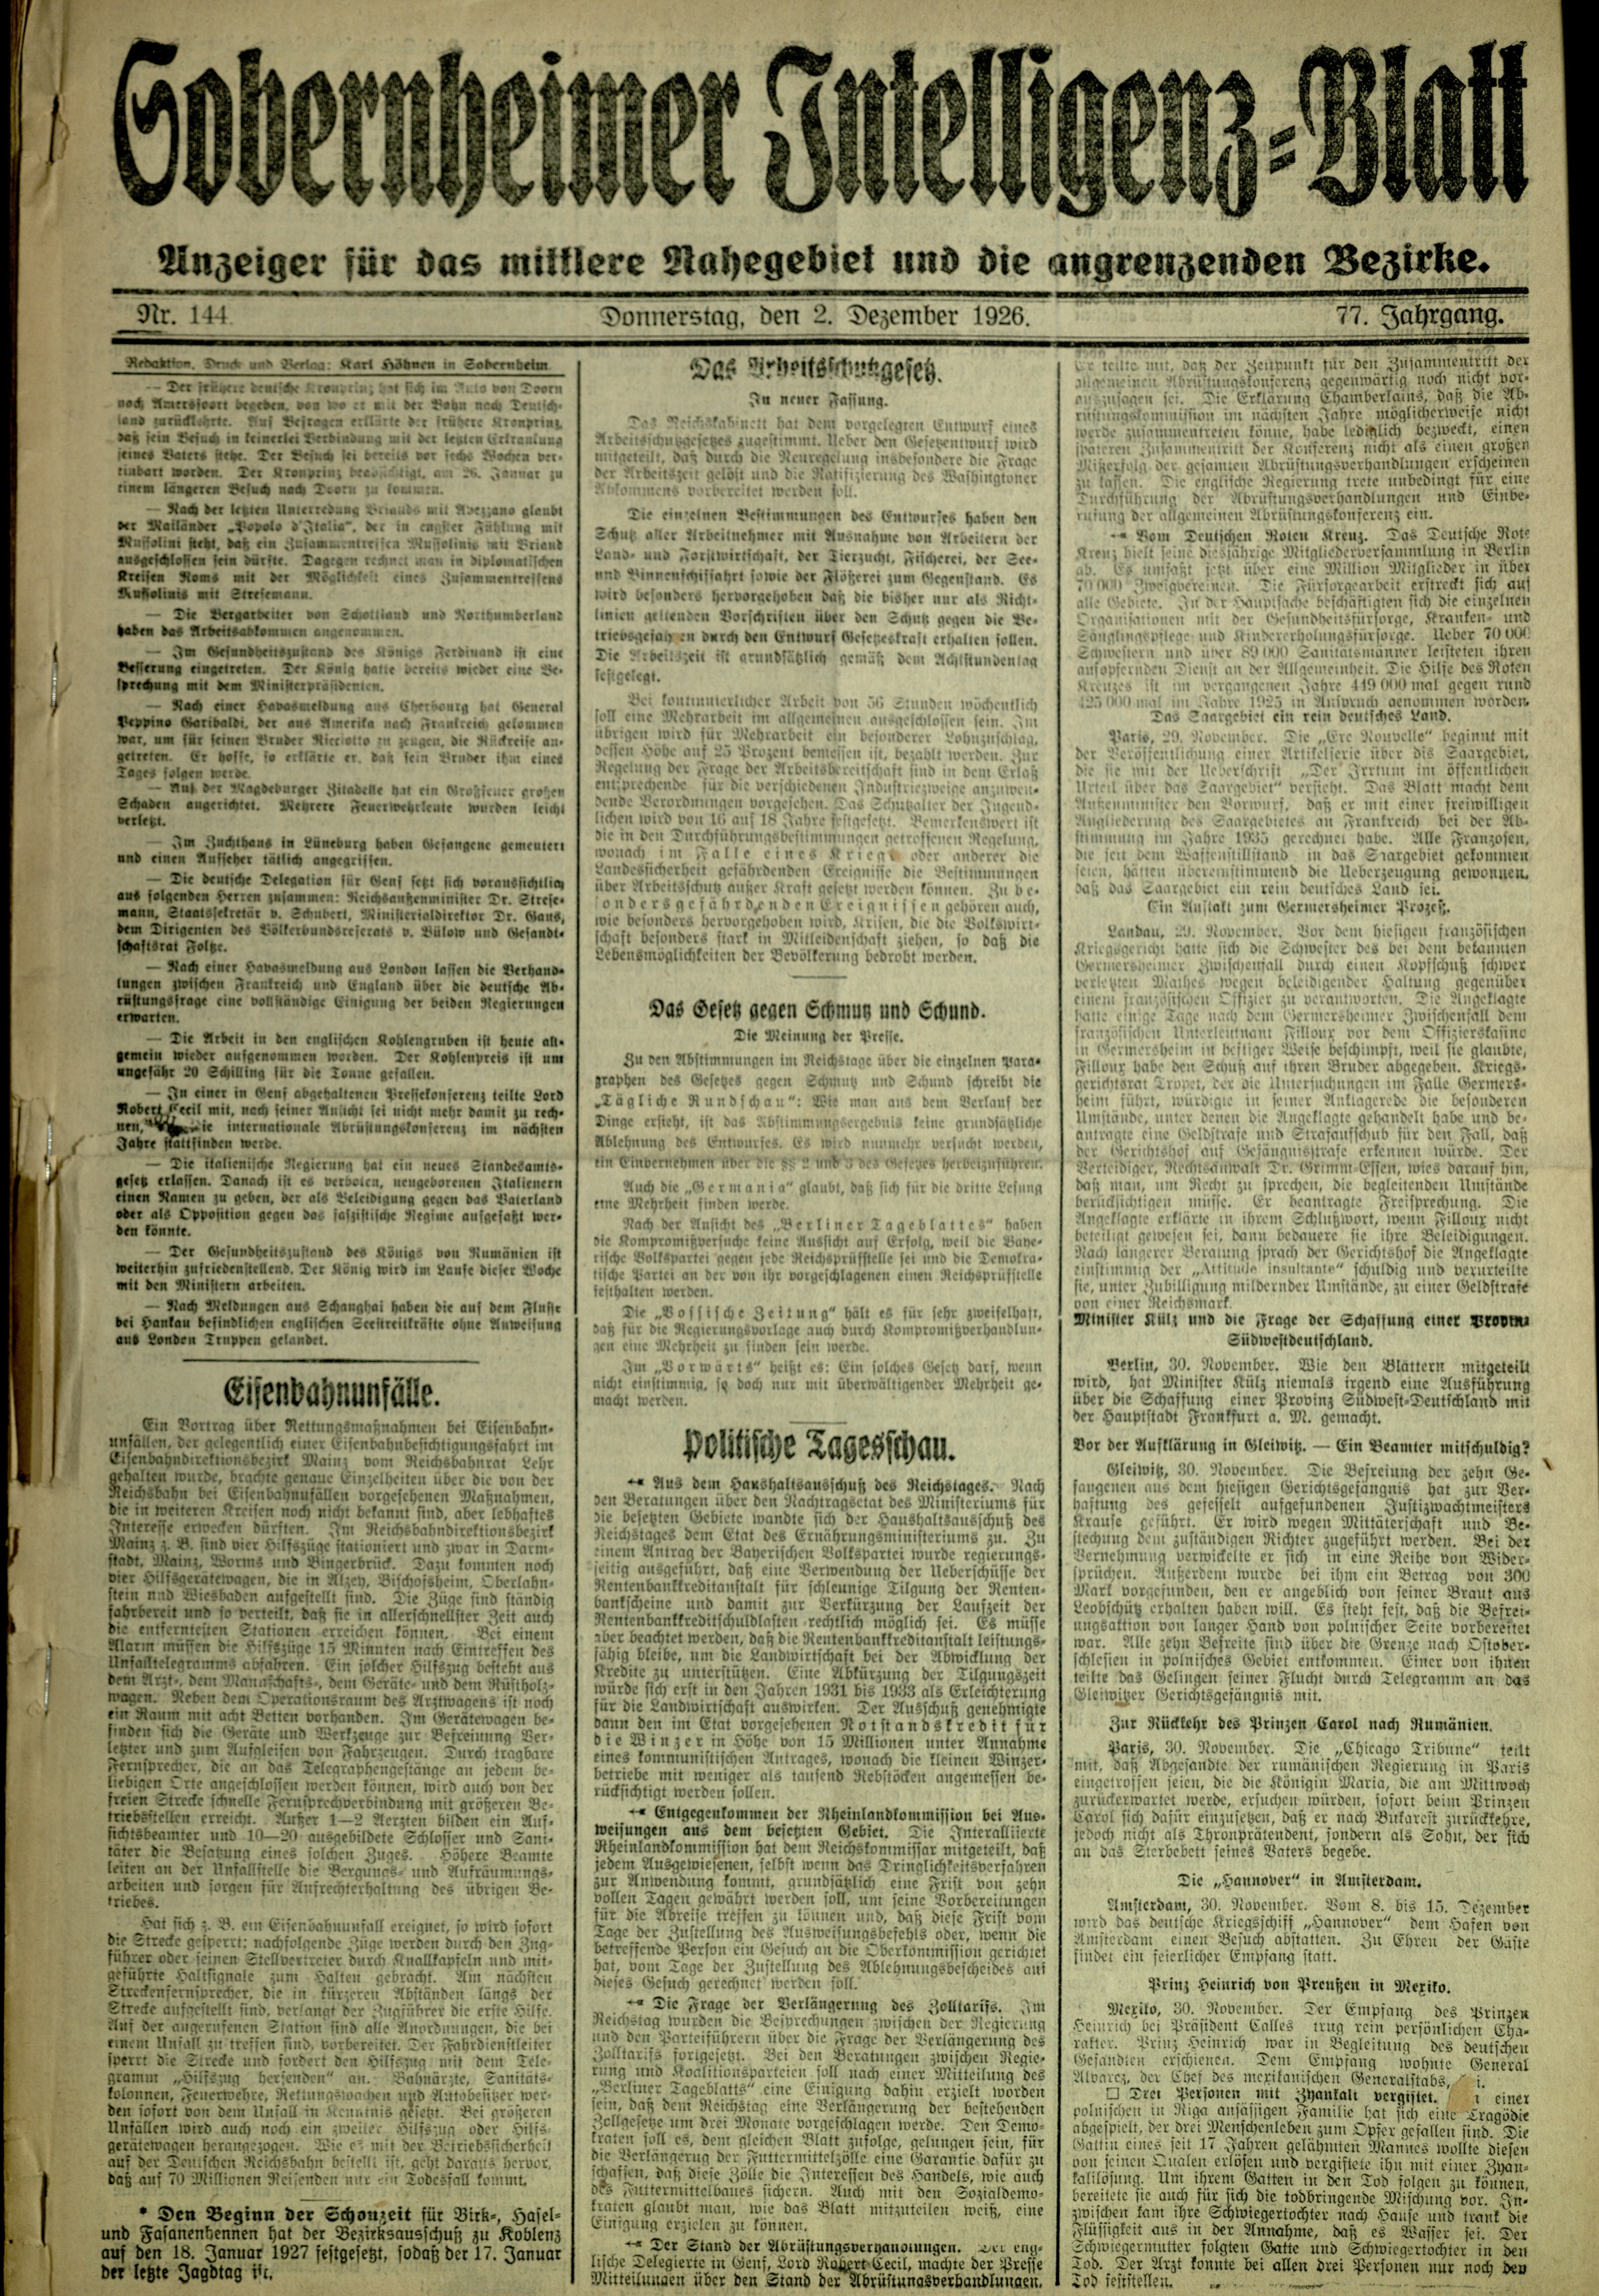 Zeitung: Sobernheimer Intelligenzblatt; Dezember 1926, Jg. 73 Nr. 144 (Heimatmuseum Bad Sobernheim CC BY-NC-SA)